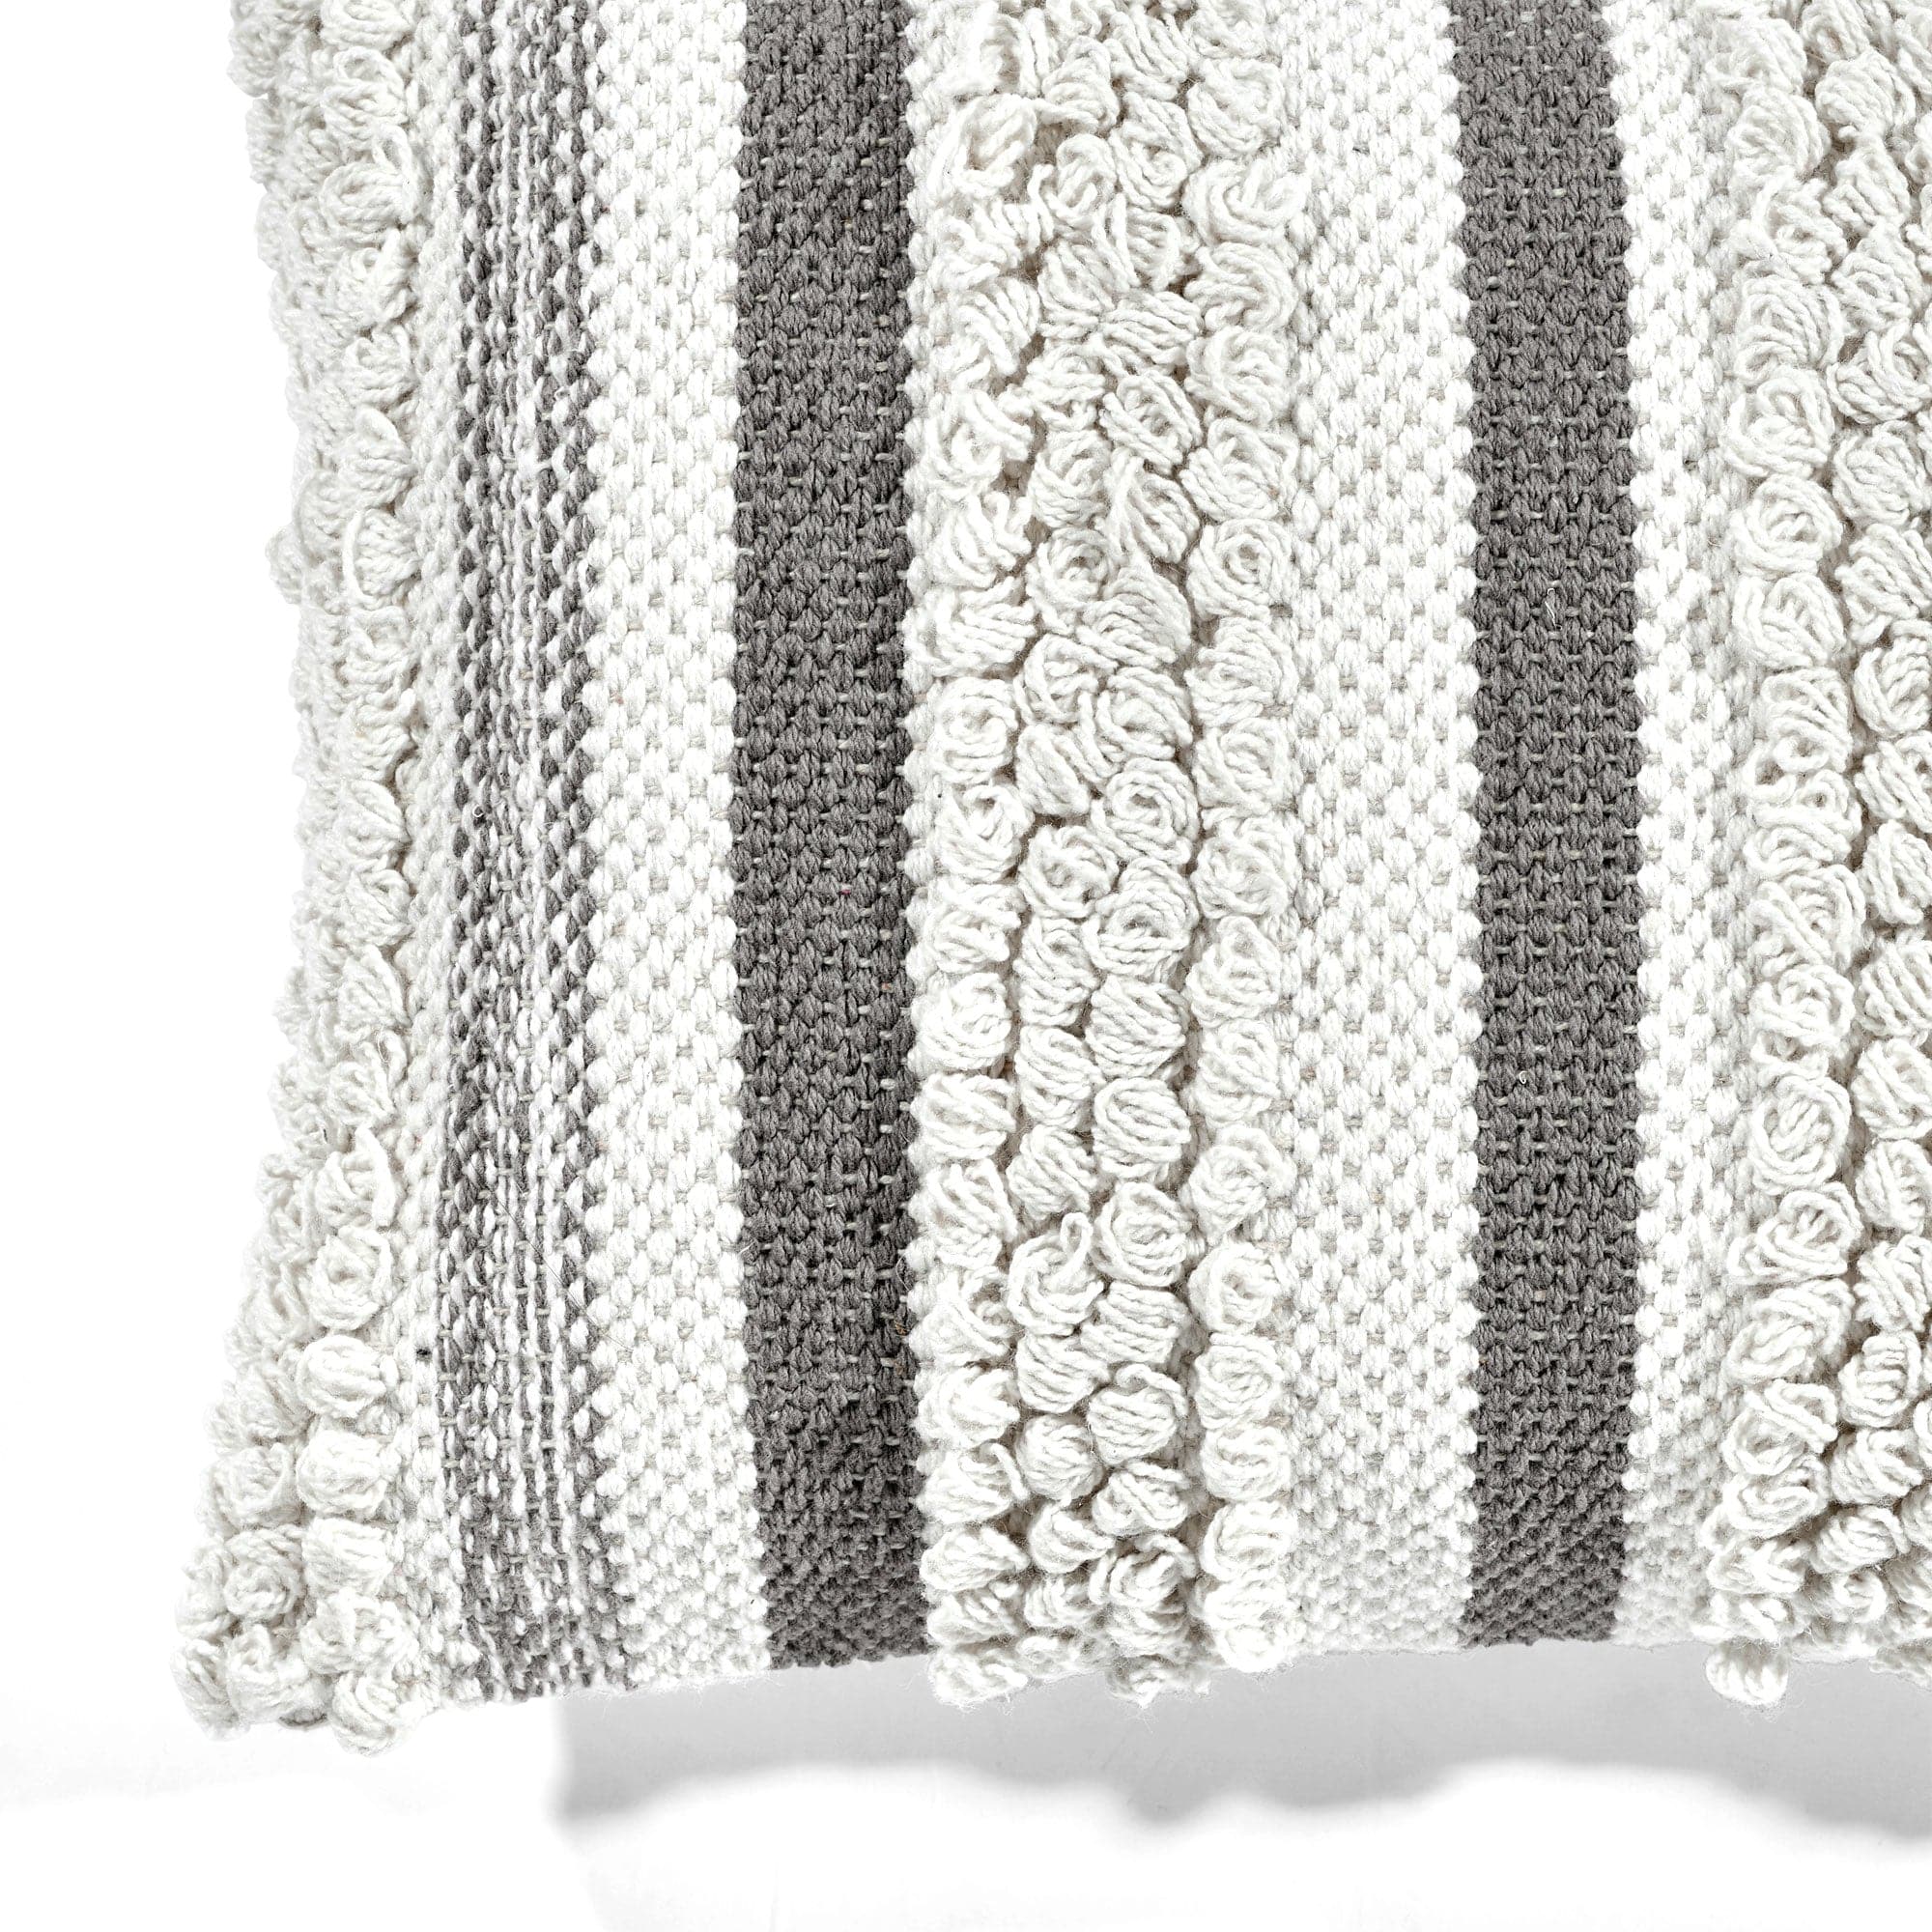 Bria Stripe Decorative Pillow Cover, Lush Decor